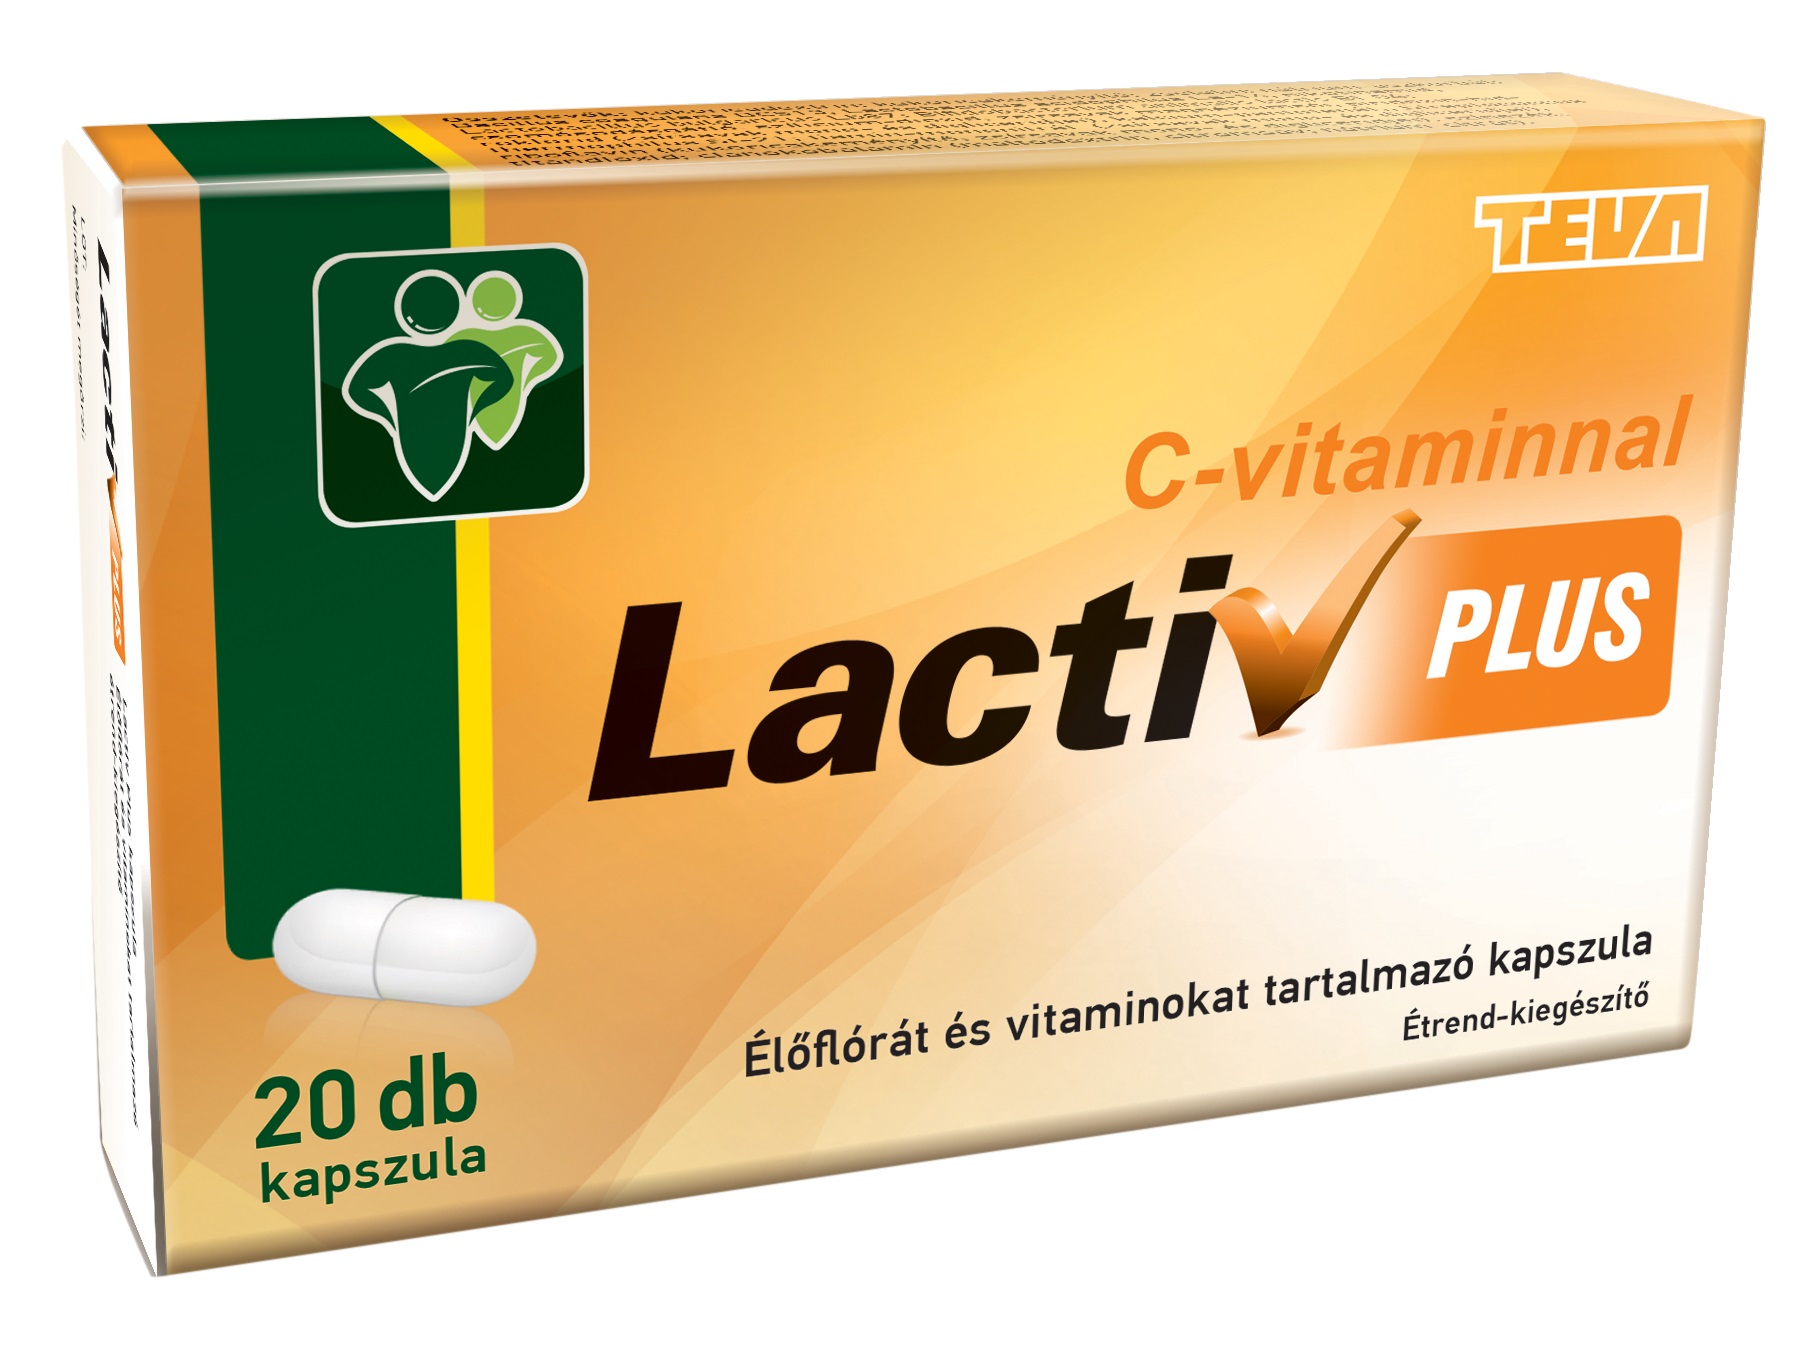 Lactiv Plus élőflóra + vitamin kapszula 